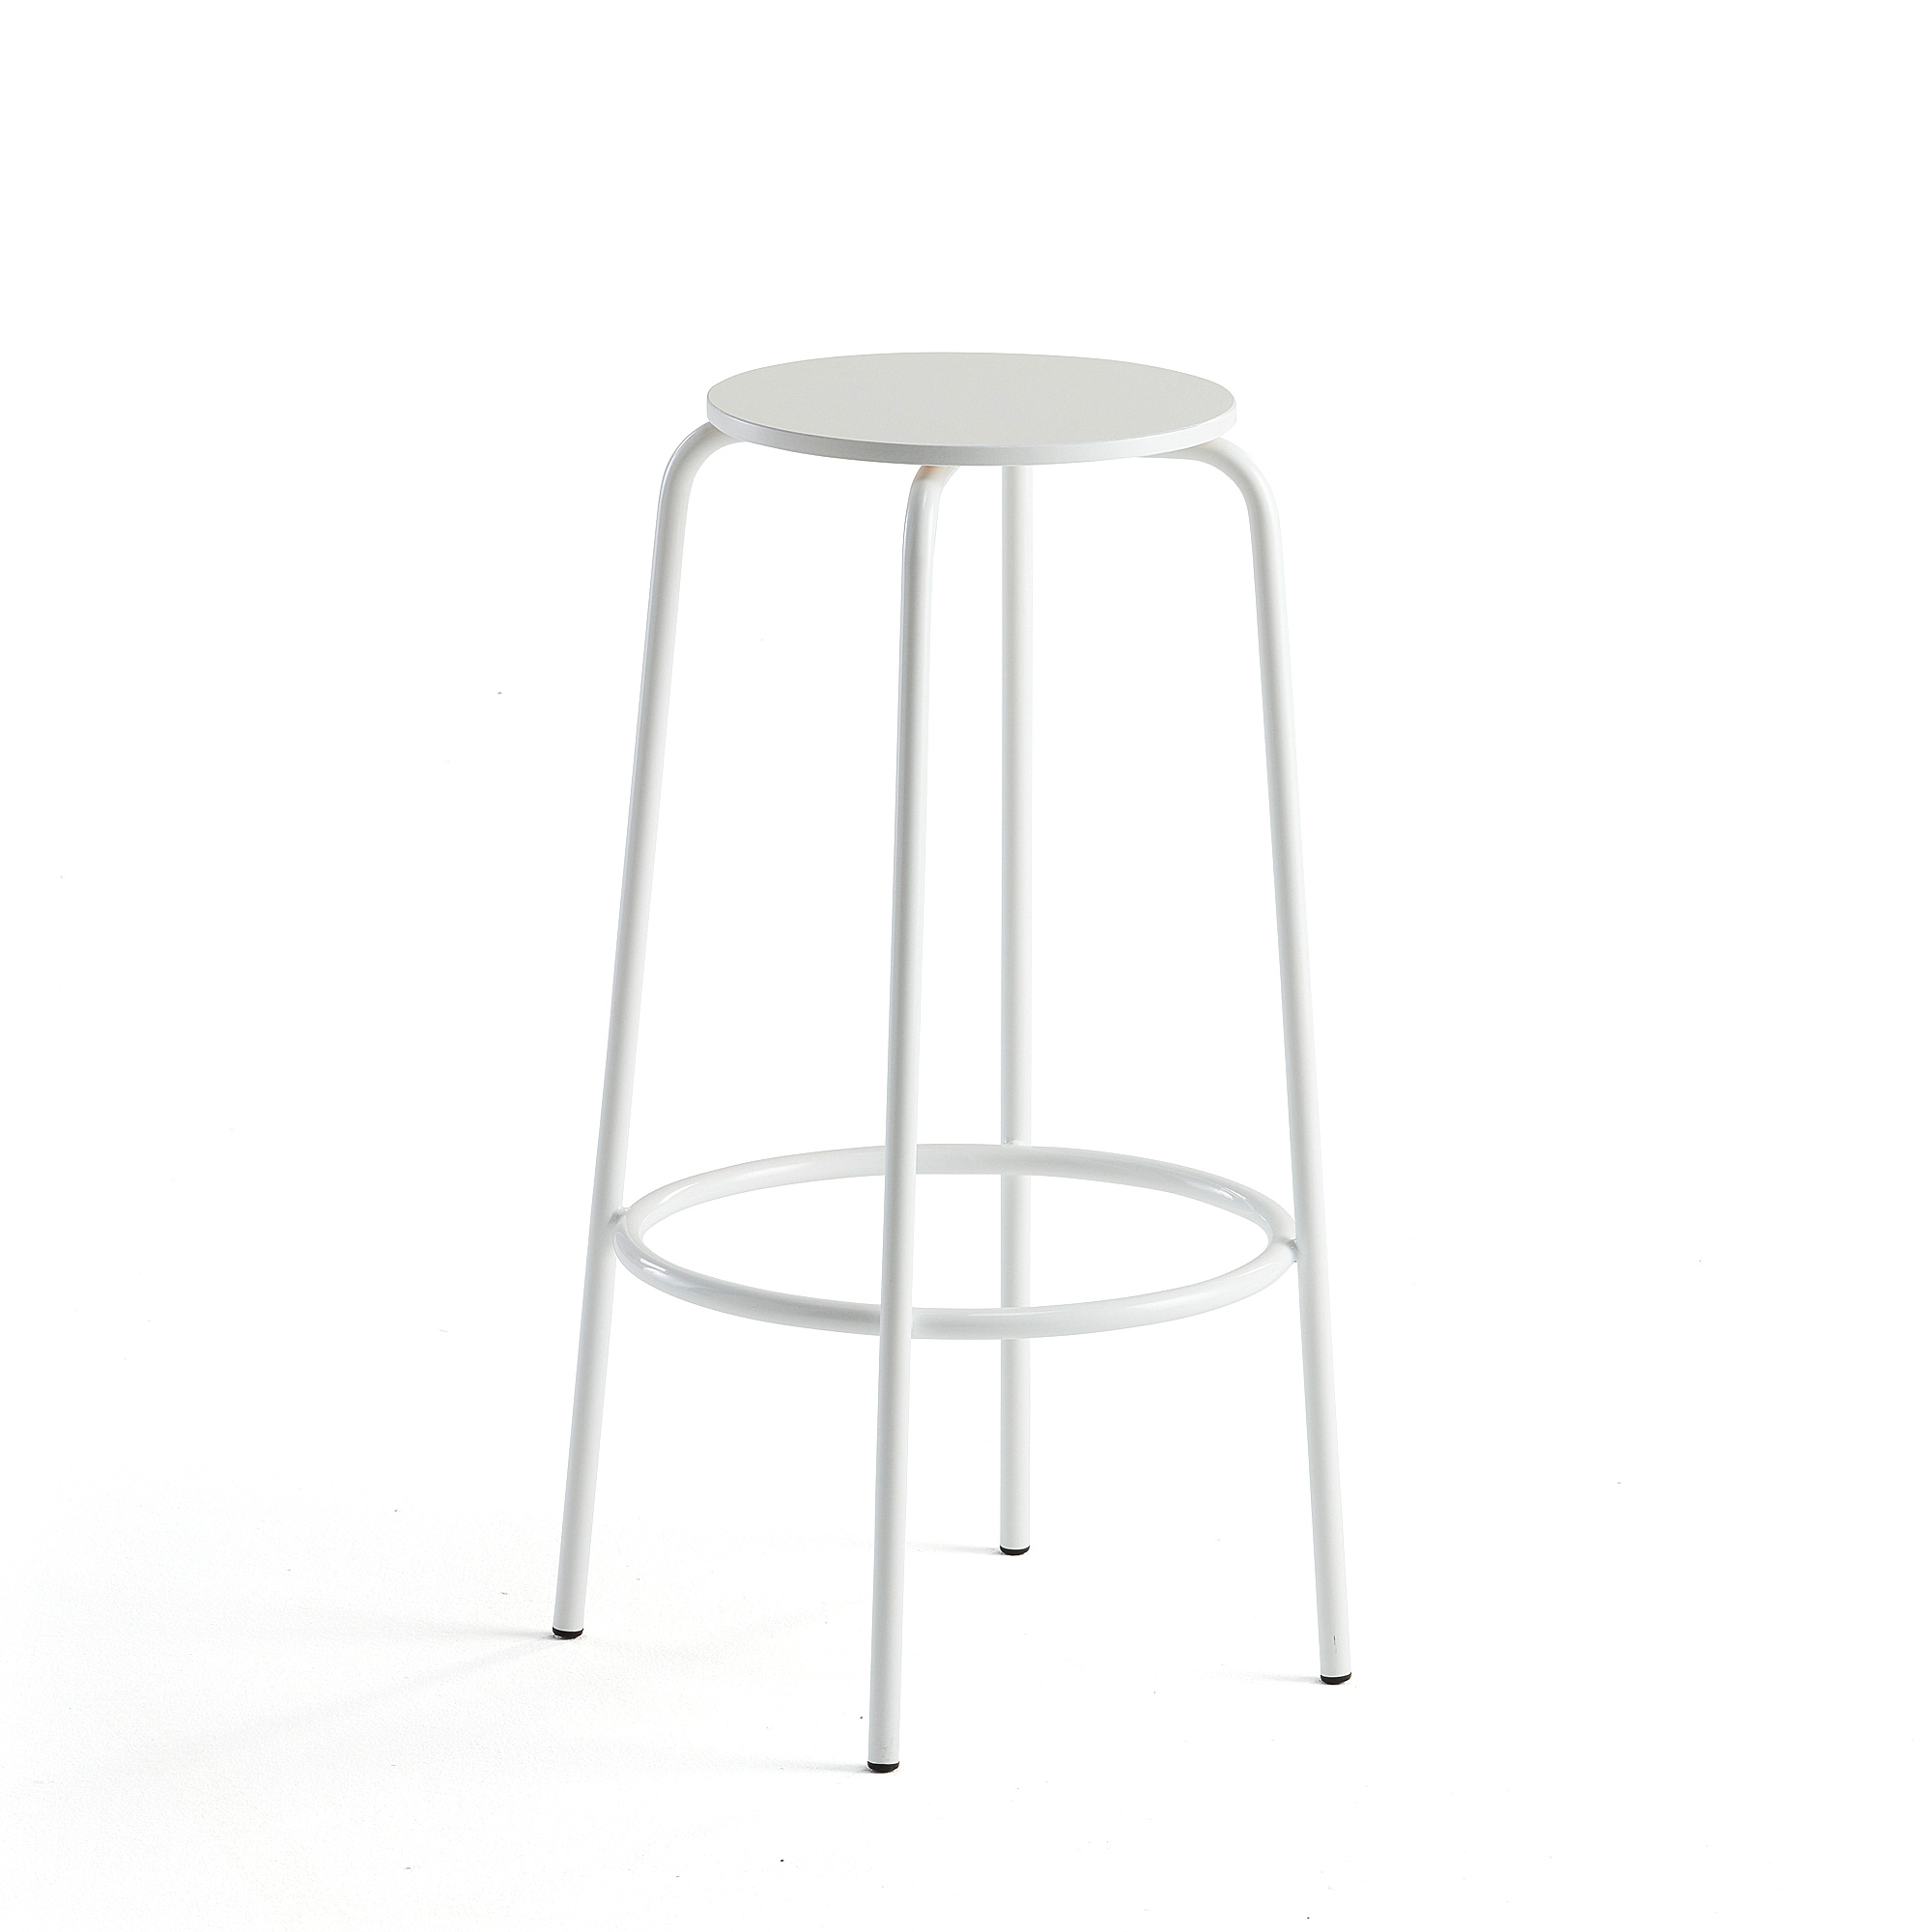 E-shop Barová stolička TIMMY, biely rám, biely sedák, V 730 mm